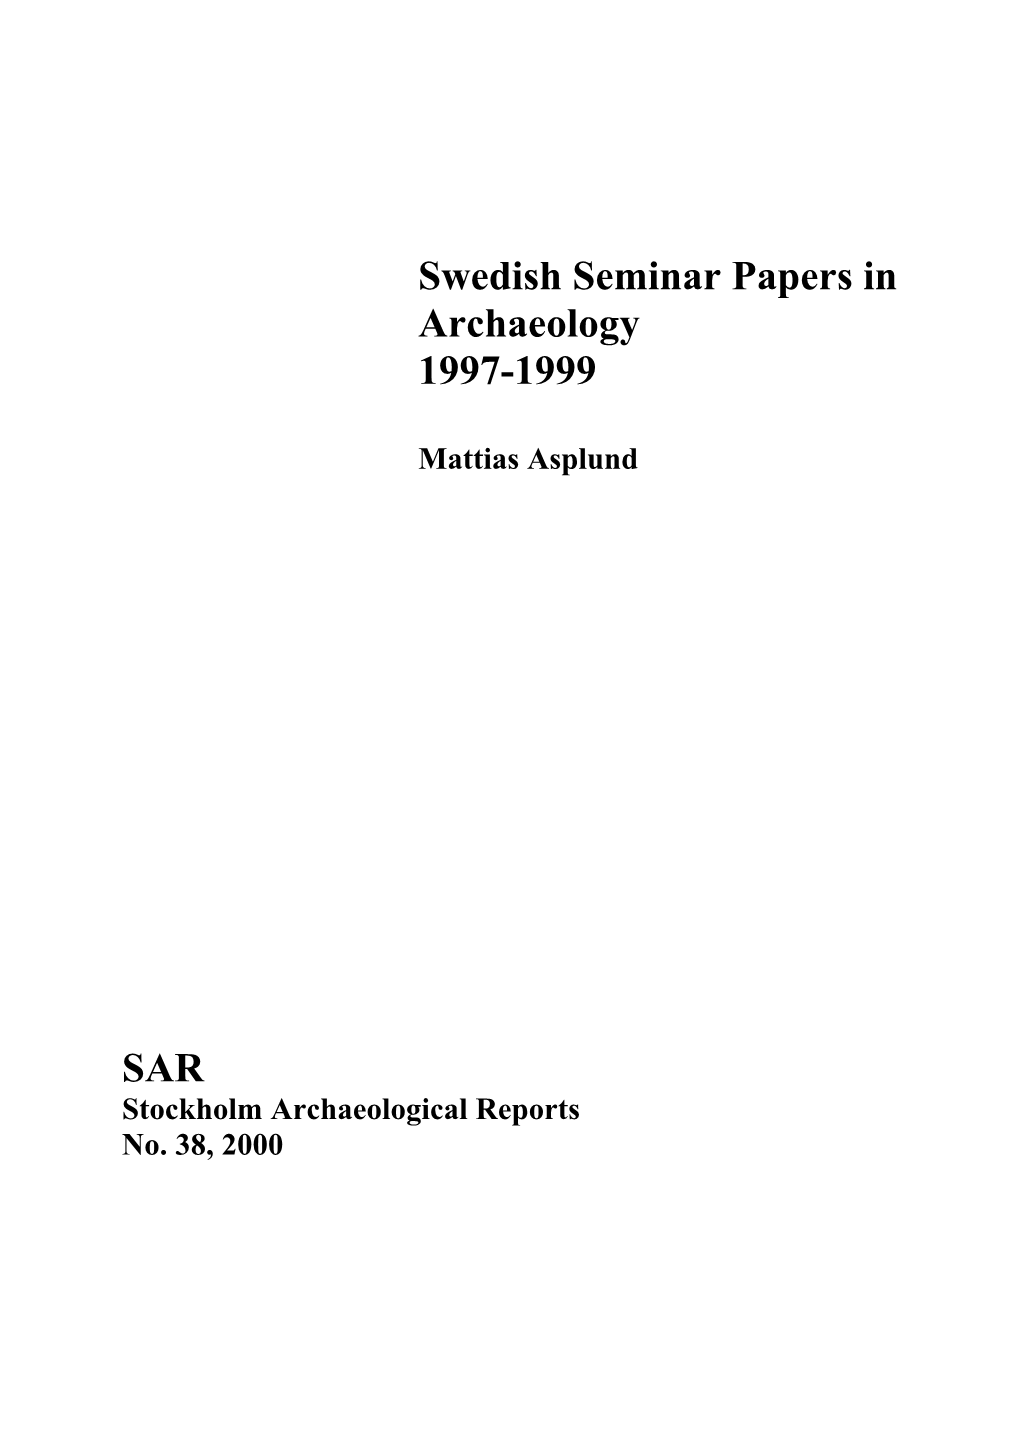 Swedish Seminar Papers-97-99(Pdf)